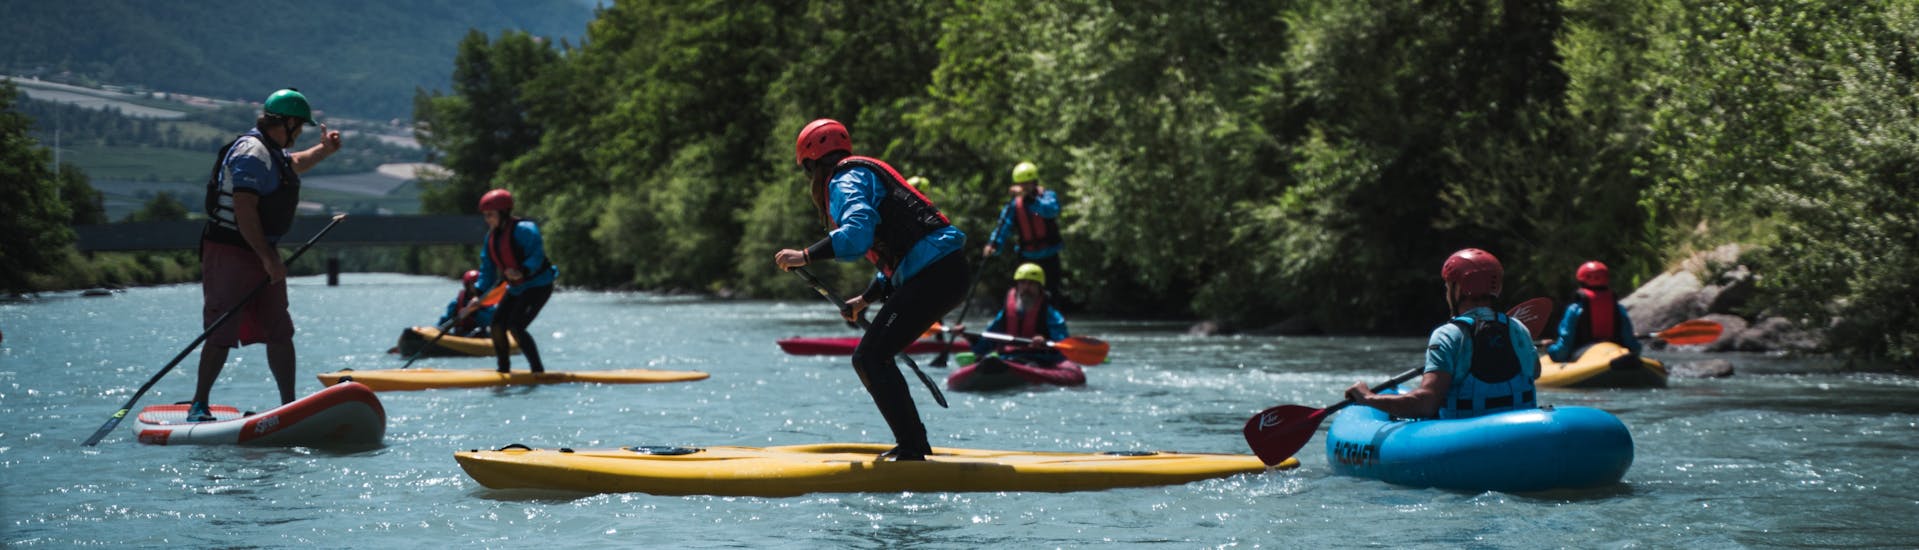 Beim Stand Up Paddling auf der Etsch im Vinschgau - Flusstour mit Adventure Südtirol lernen alle etwas dazu.